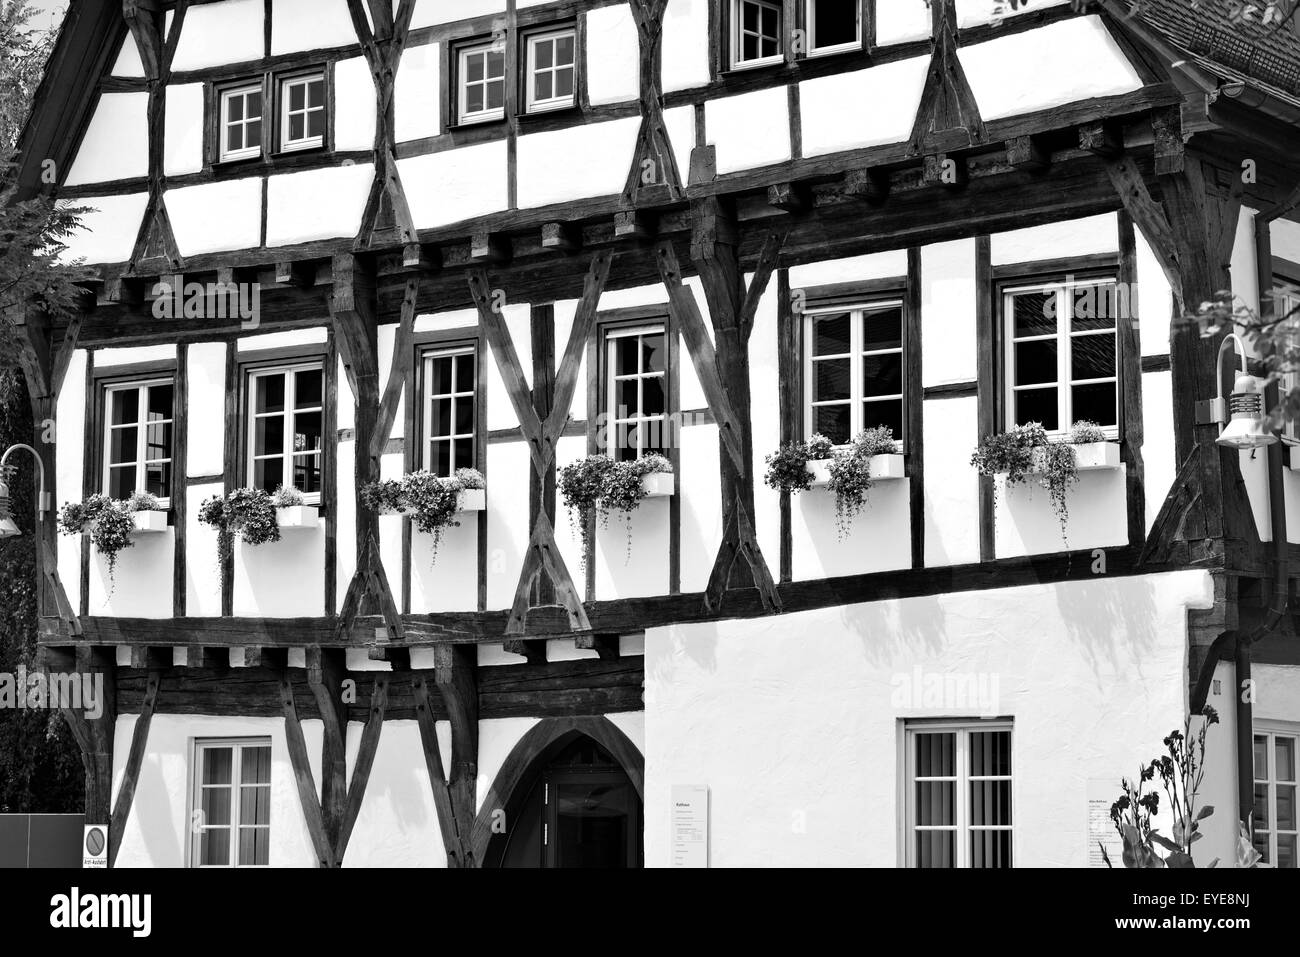 Deutschland, Biberach a.d.Riß: Altes Rathaus (Altes Rathaus) als schwarz-weiß-Version Stockfoto